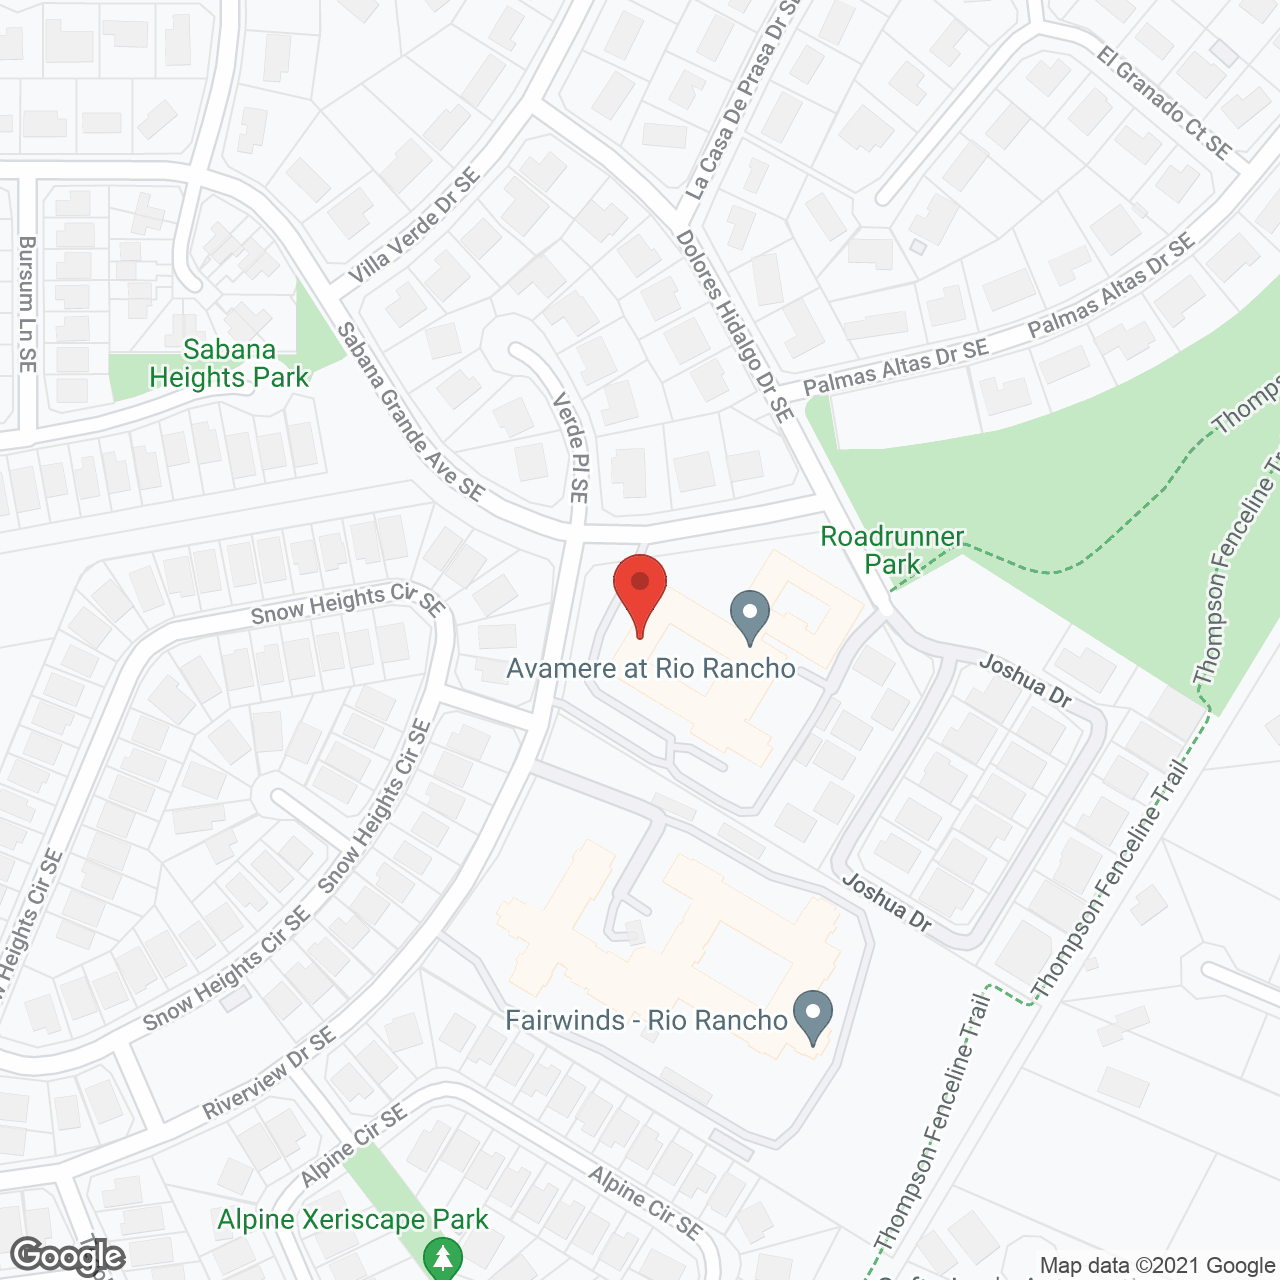 Avamere at Rio Rancho in google map